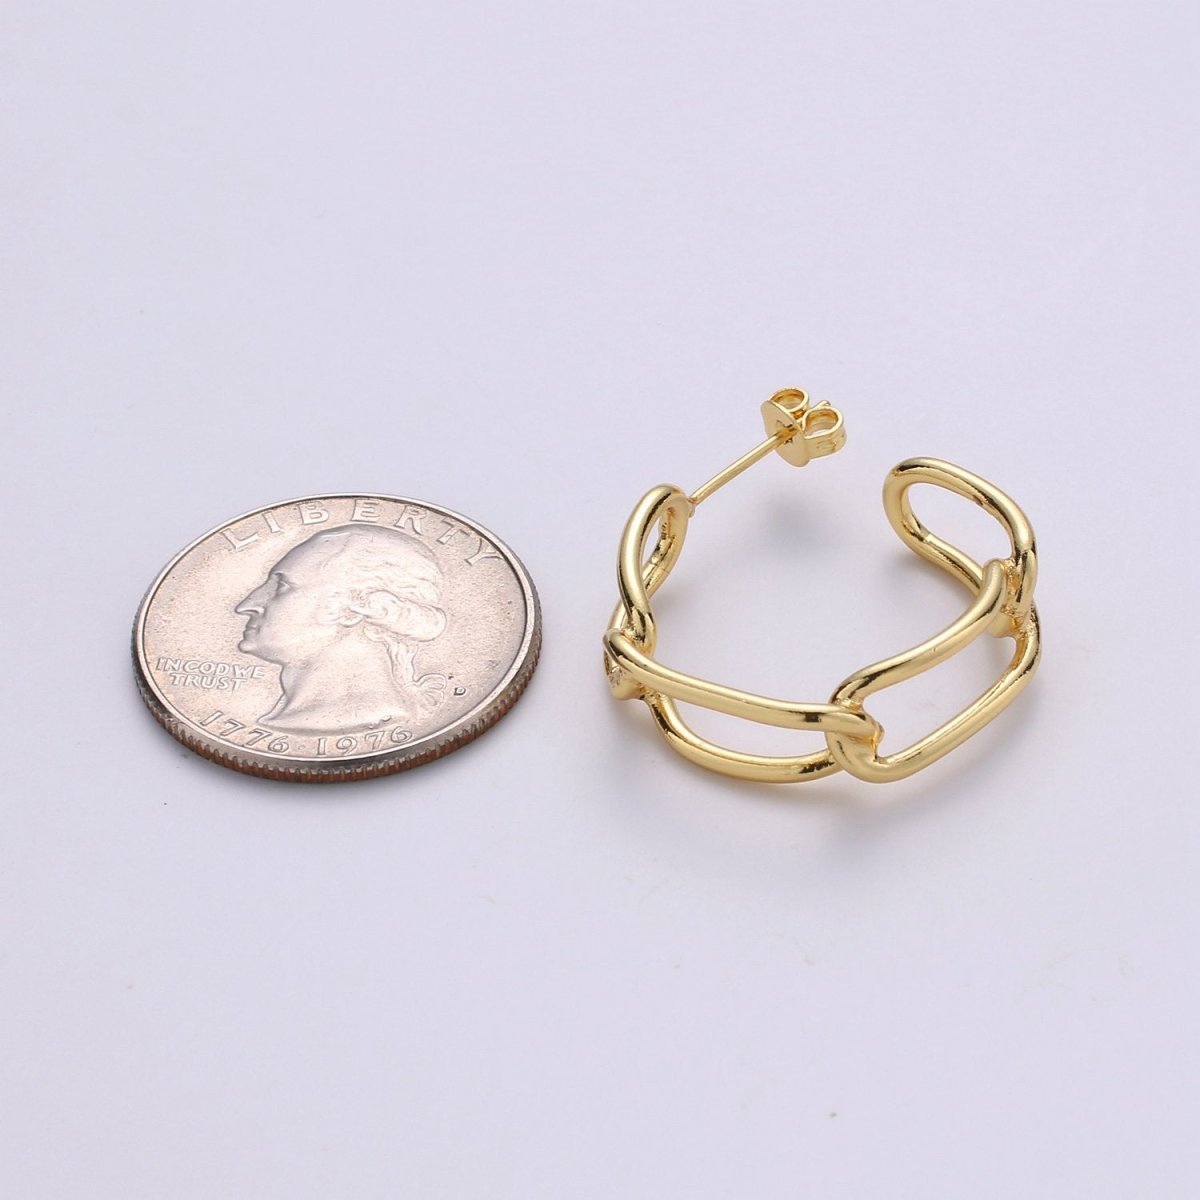 24k Vermeil Gold Earrings, Hoop Earrings, Long Chain Link Earring, Stud Earring, Gift for Her, Earrings for Women, Everyday Wear Earring Q-528 - DLUXCA